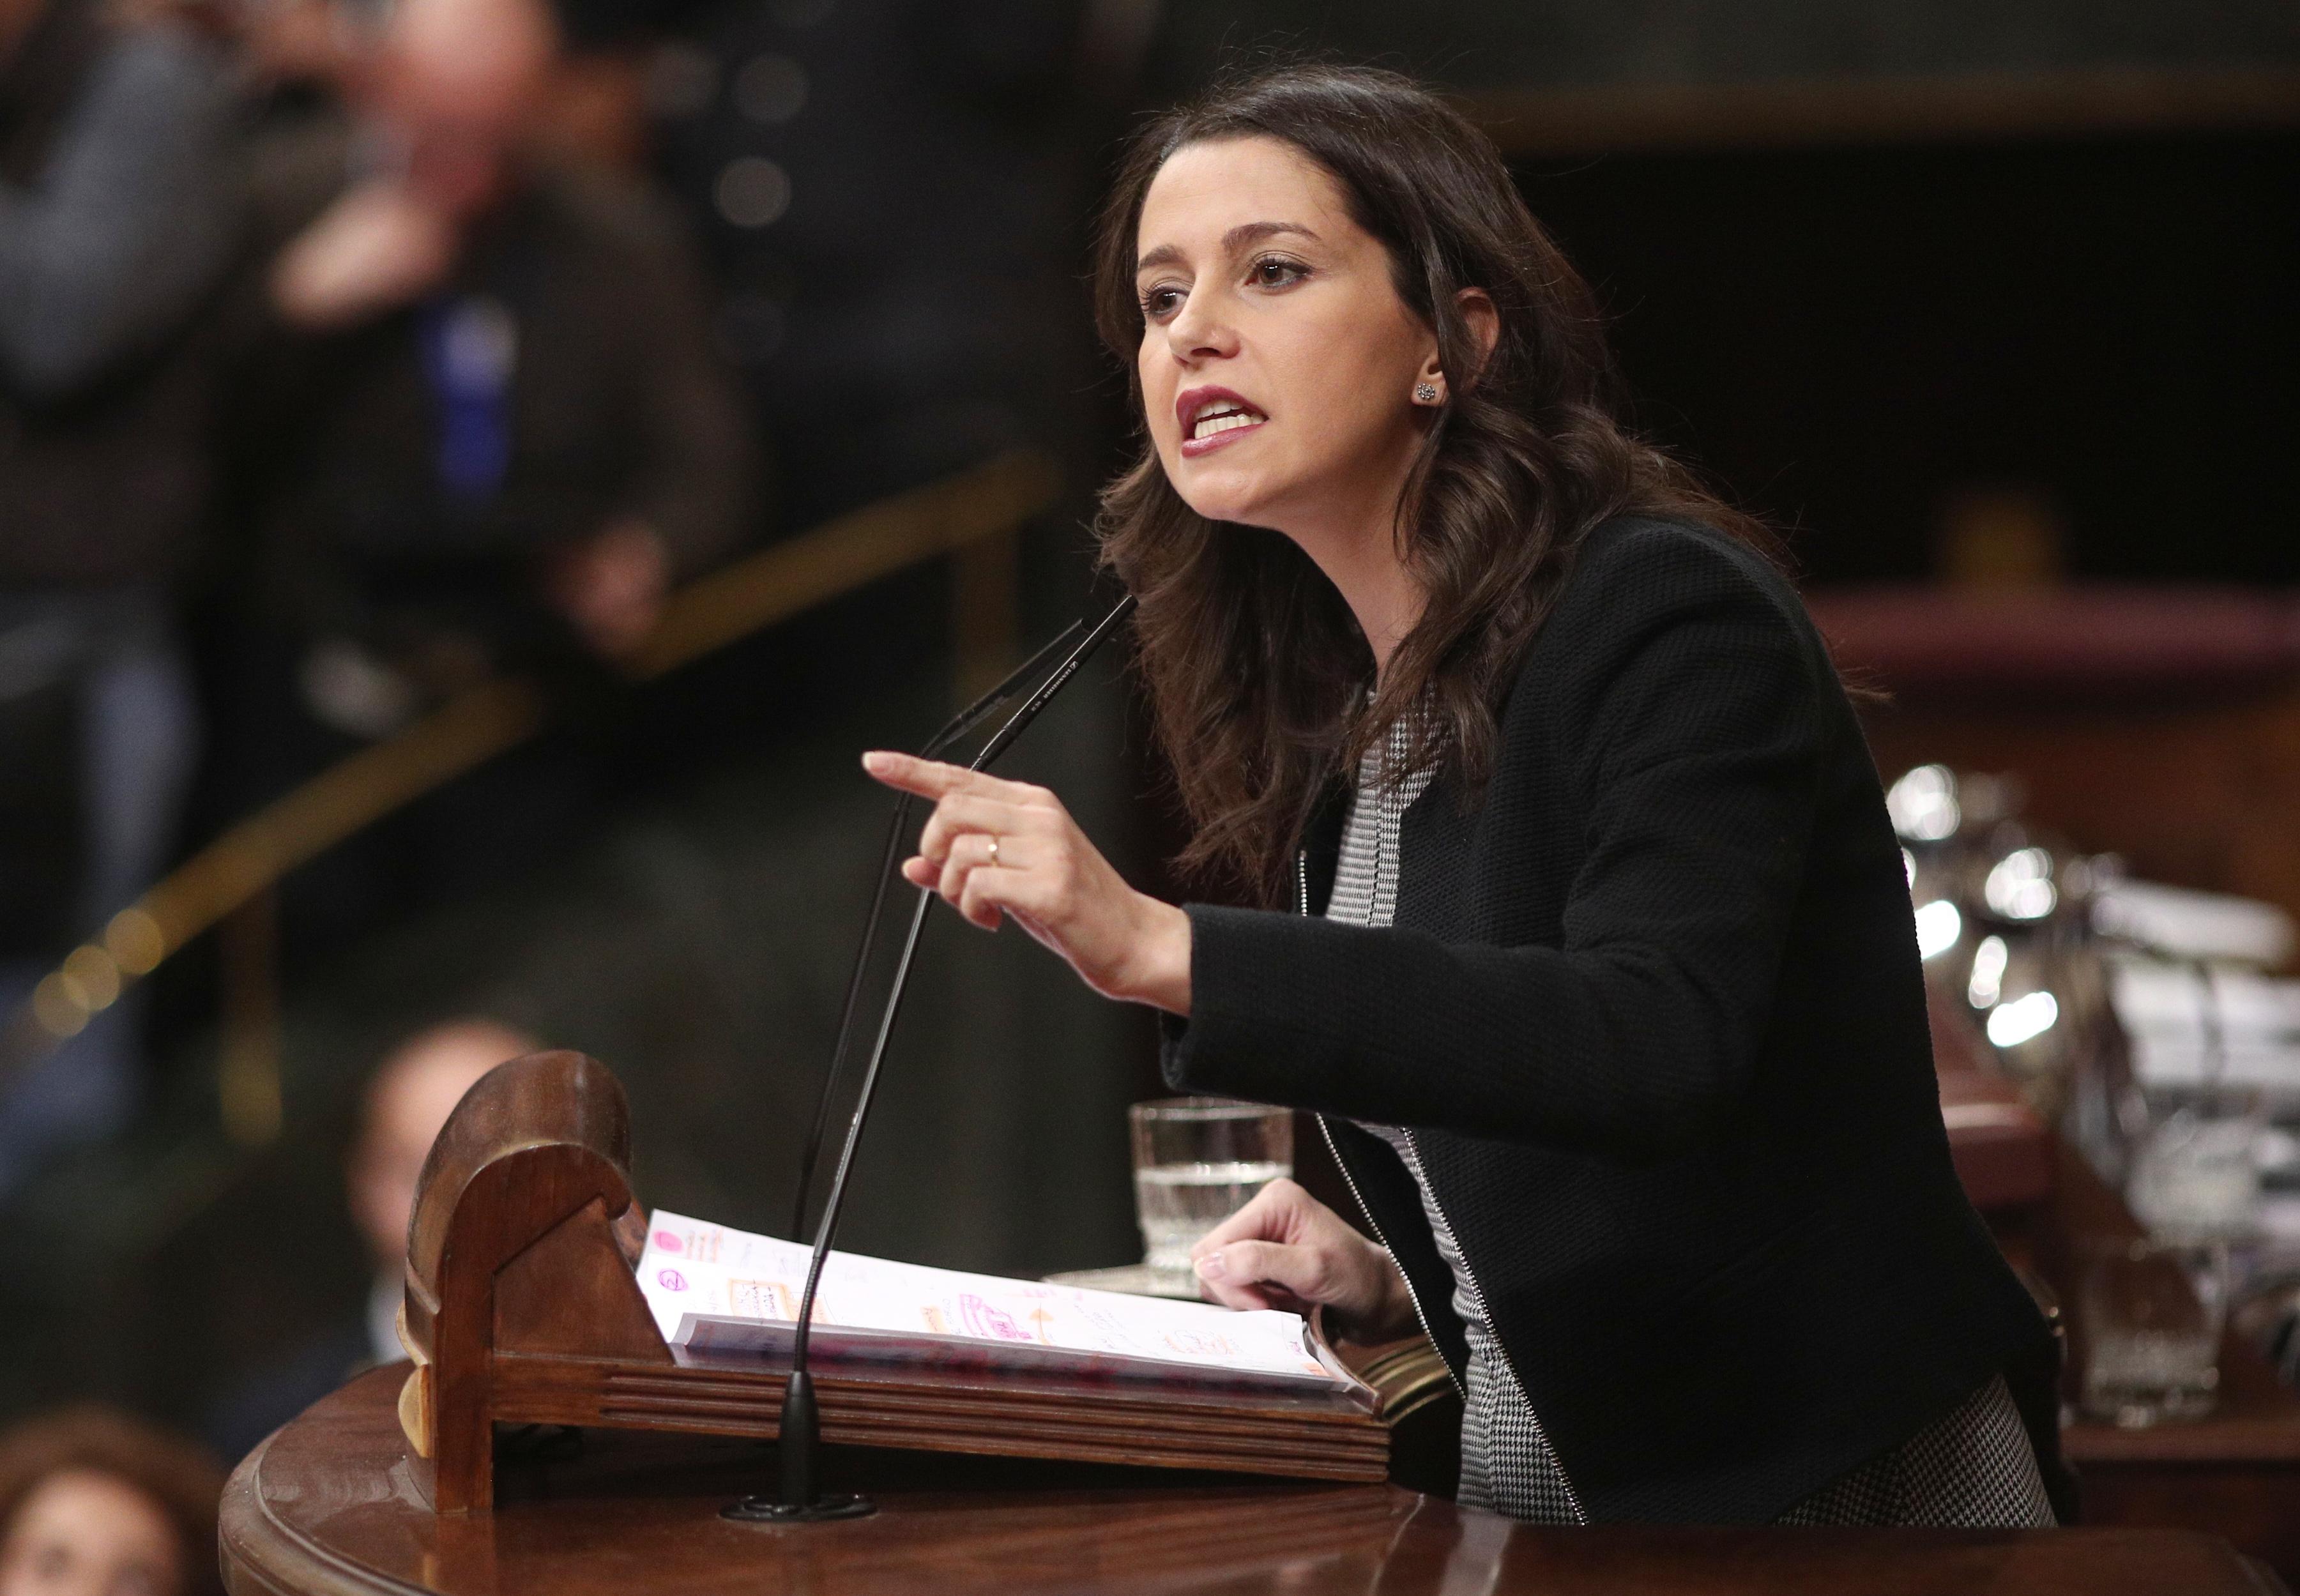 La portavoz parlamentaria de Ciudadanos Inés Arrimadas interviene en la segunda sesión de votación para la investidura del candidato socialista a la Presidencia del Gobierno